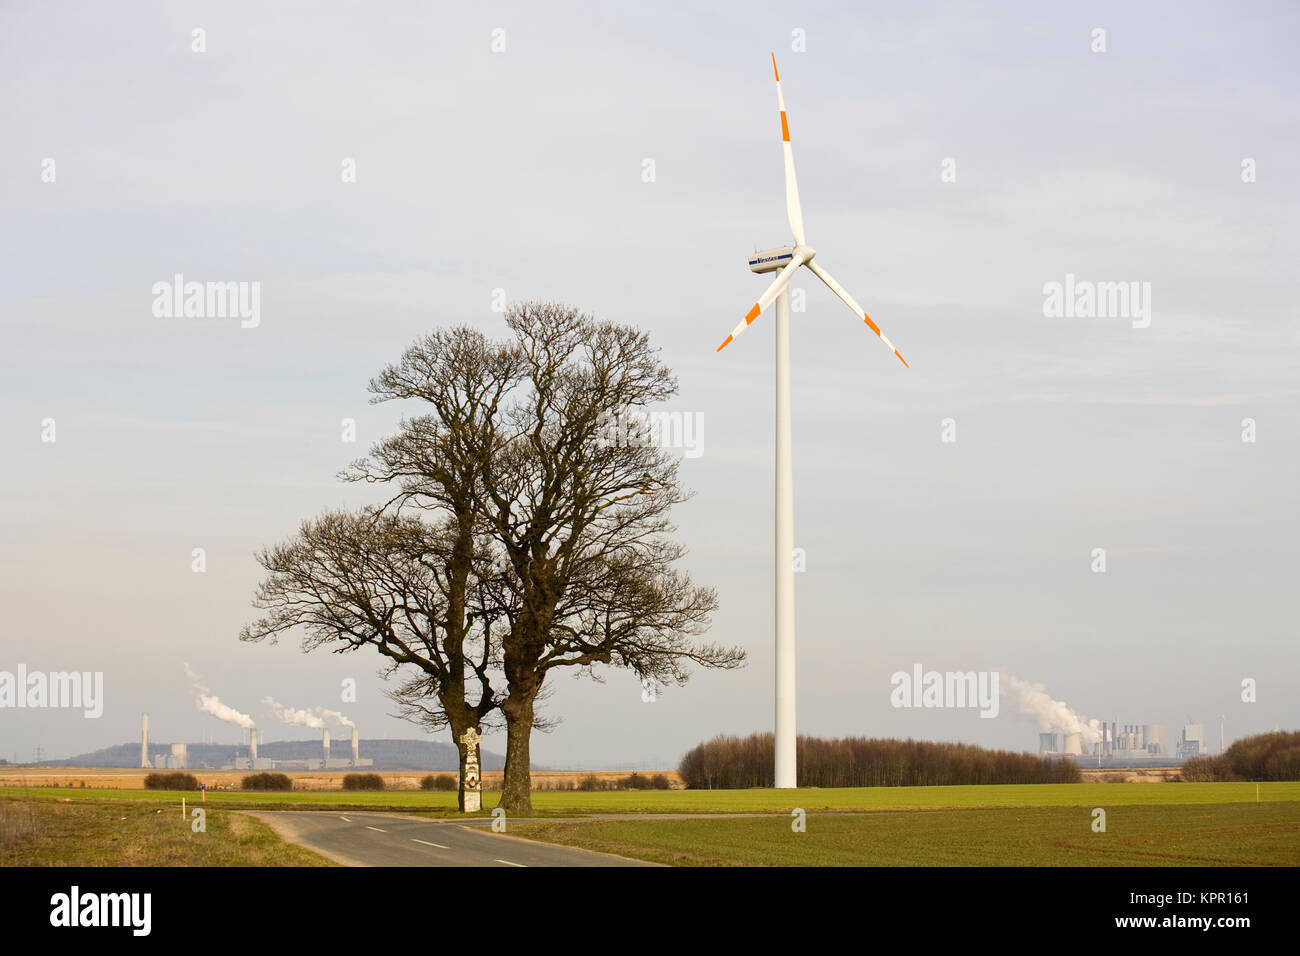 Europa, Deutschland, Windpark in der Nähe von Bedburg, im Hintergrund die Kraftwerke Frimmersdorf und Neurath. Europa, Deutschland, Windkraftanlage b Stockfoto